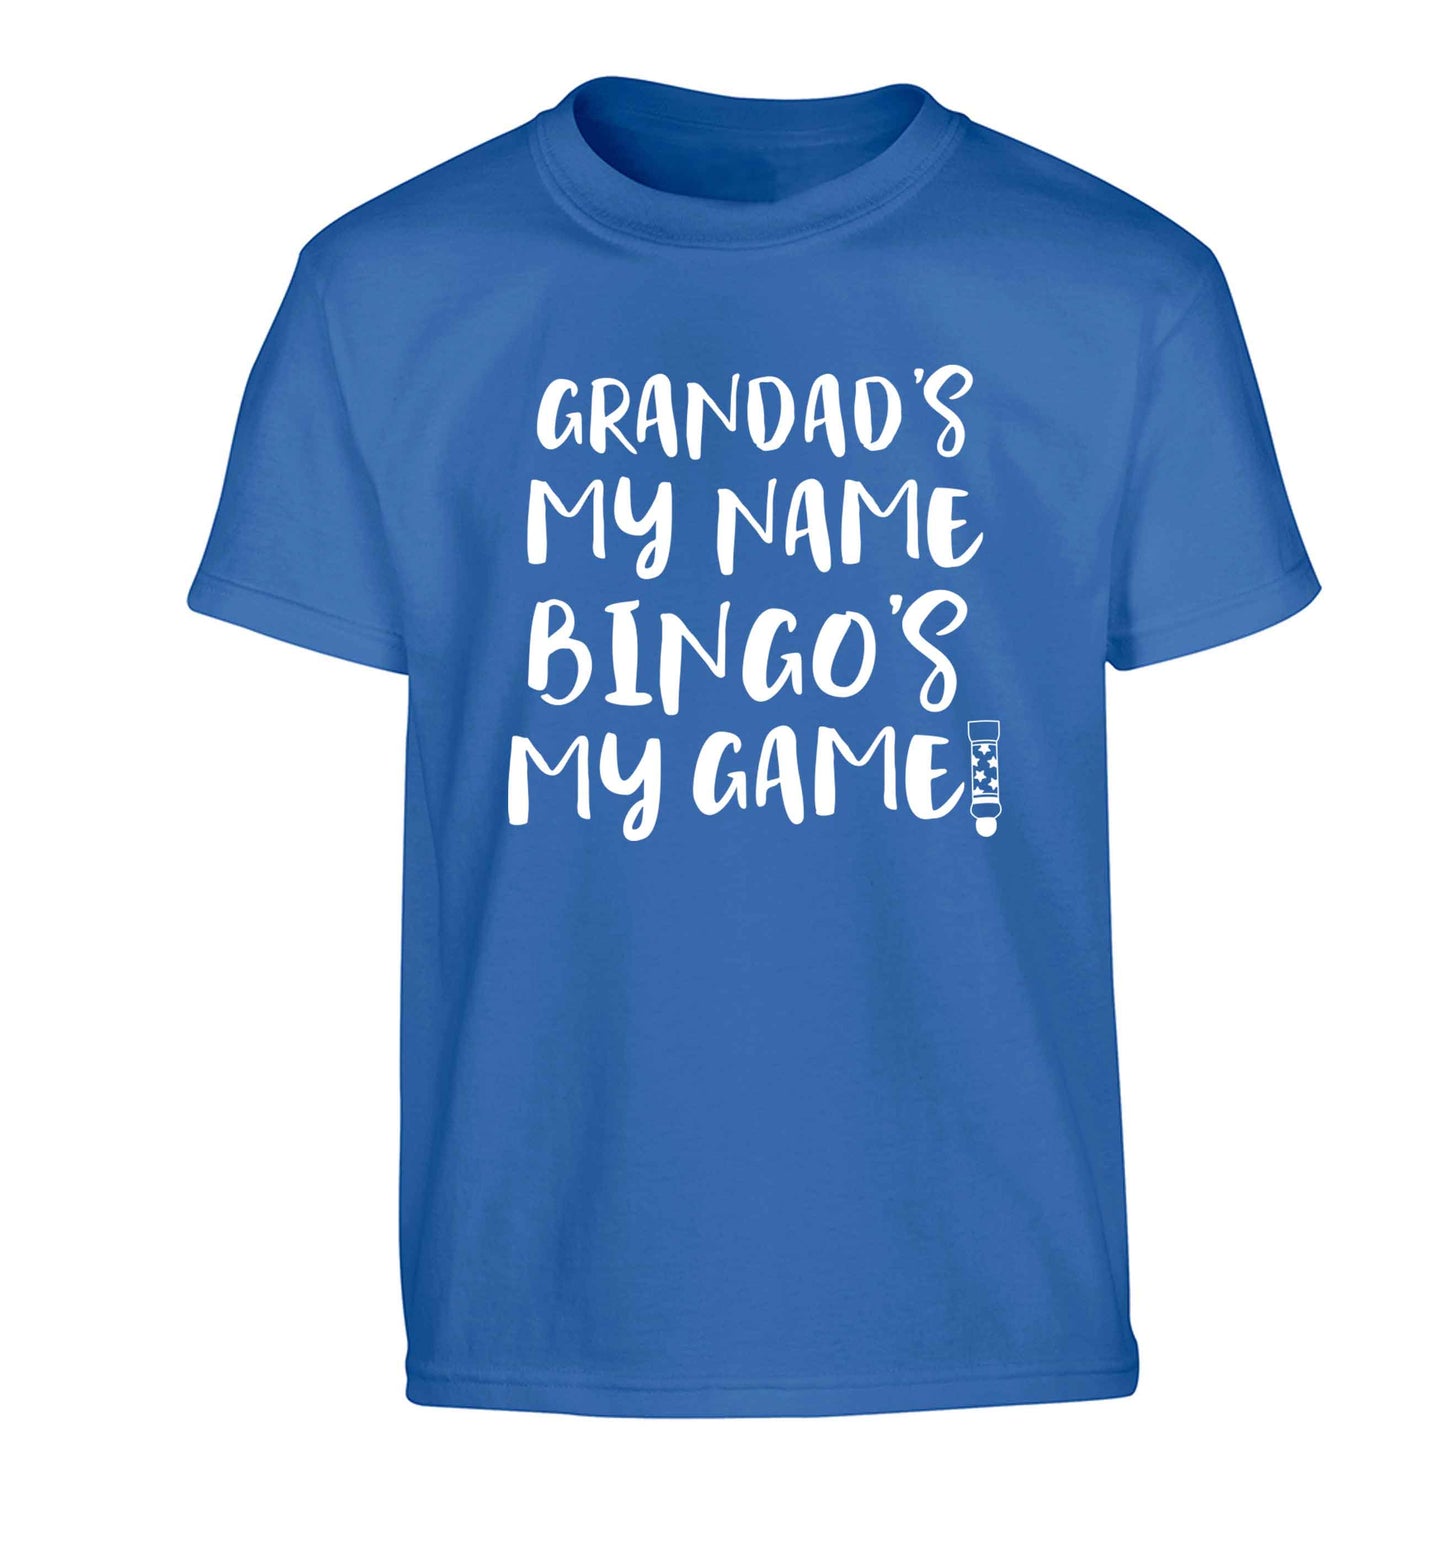 Grandad's my name bingo's my game! Children's blue Tshirt 12-13 Years